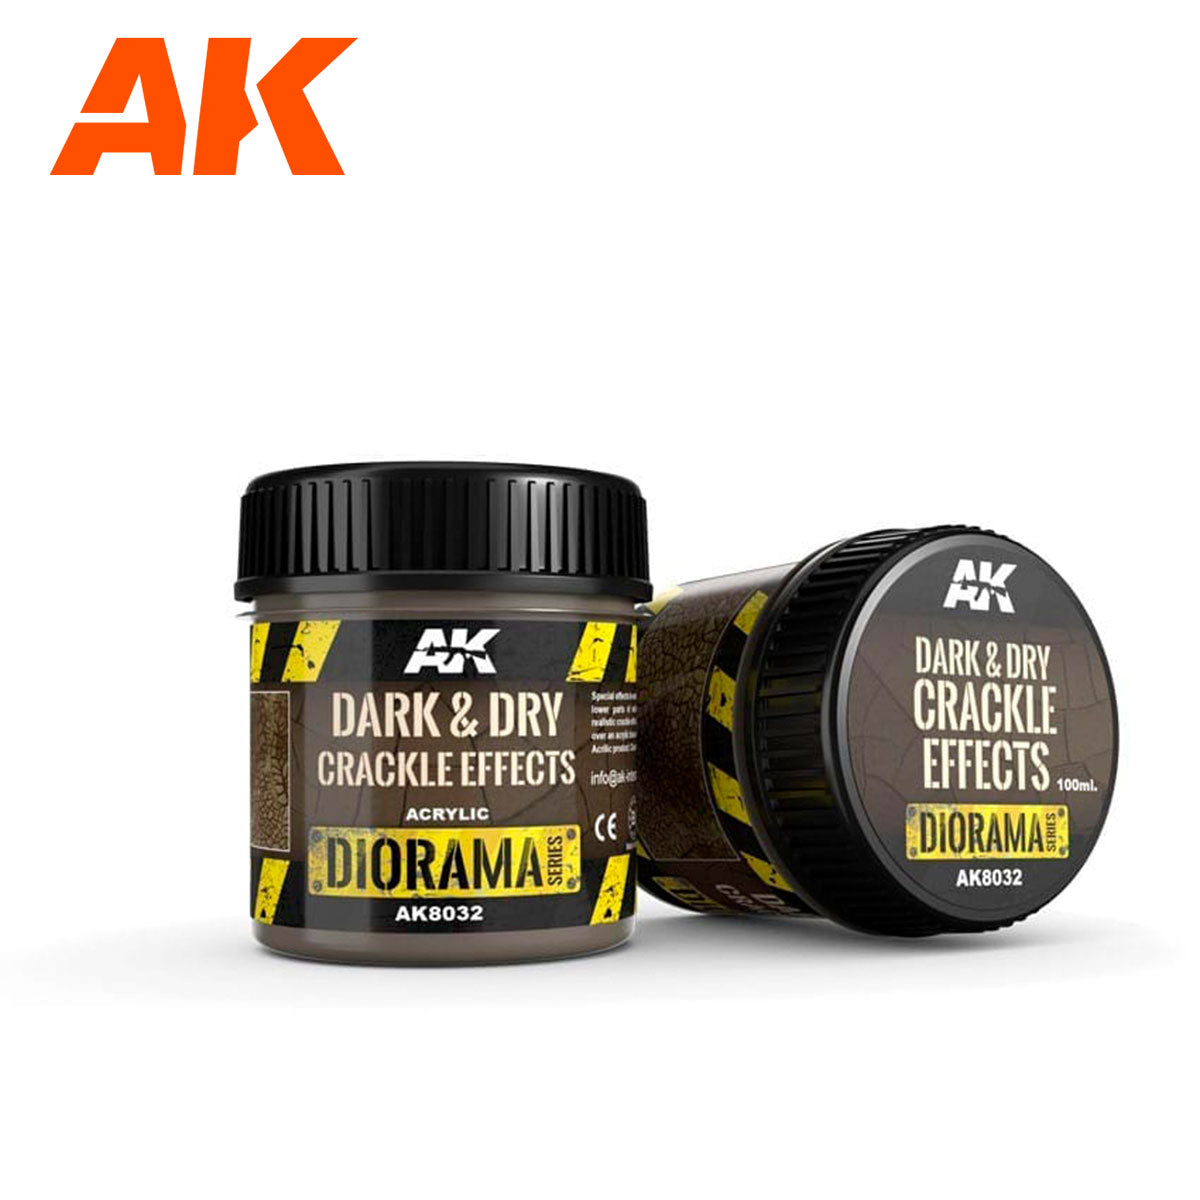 AK8032 - Dark & Dry Crackle Effects 100ml